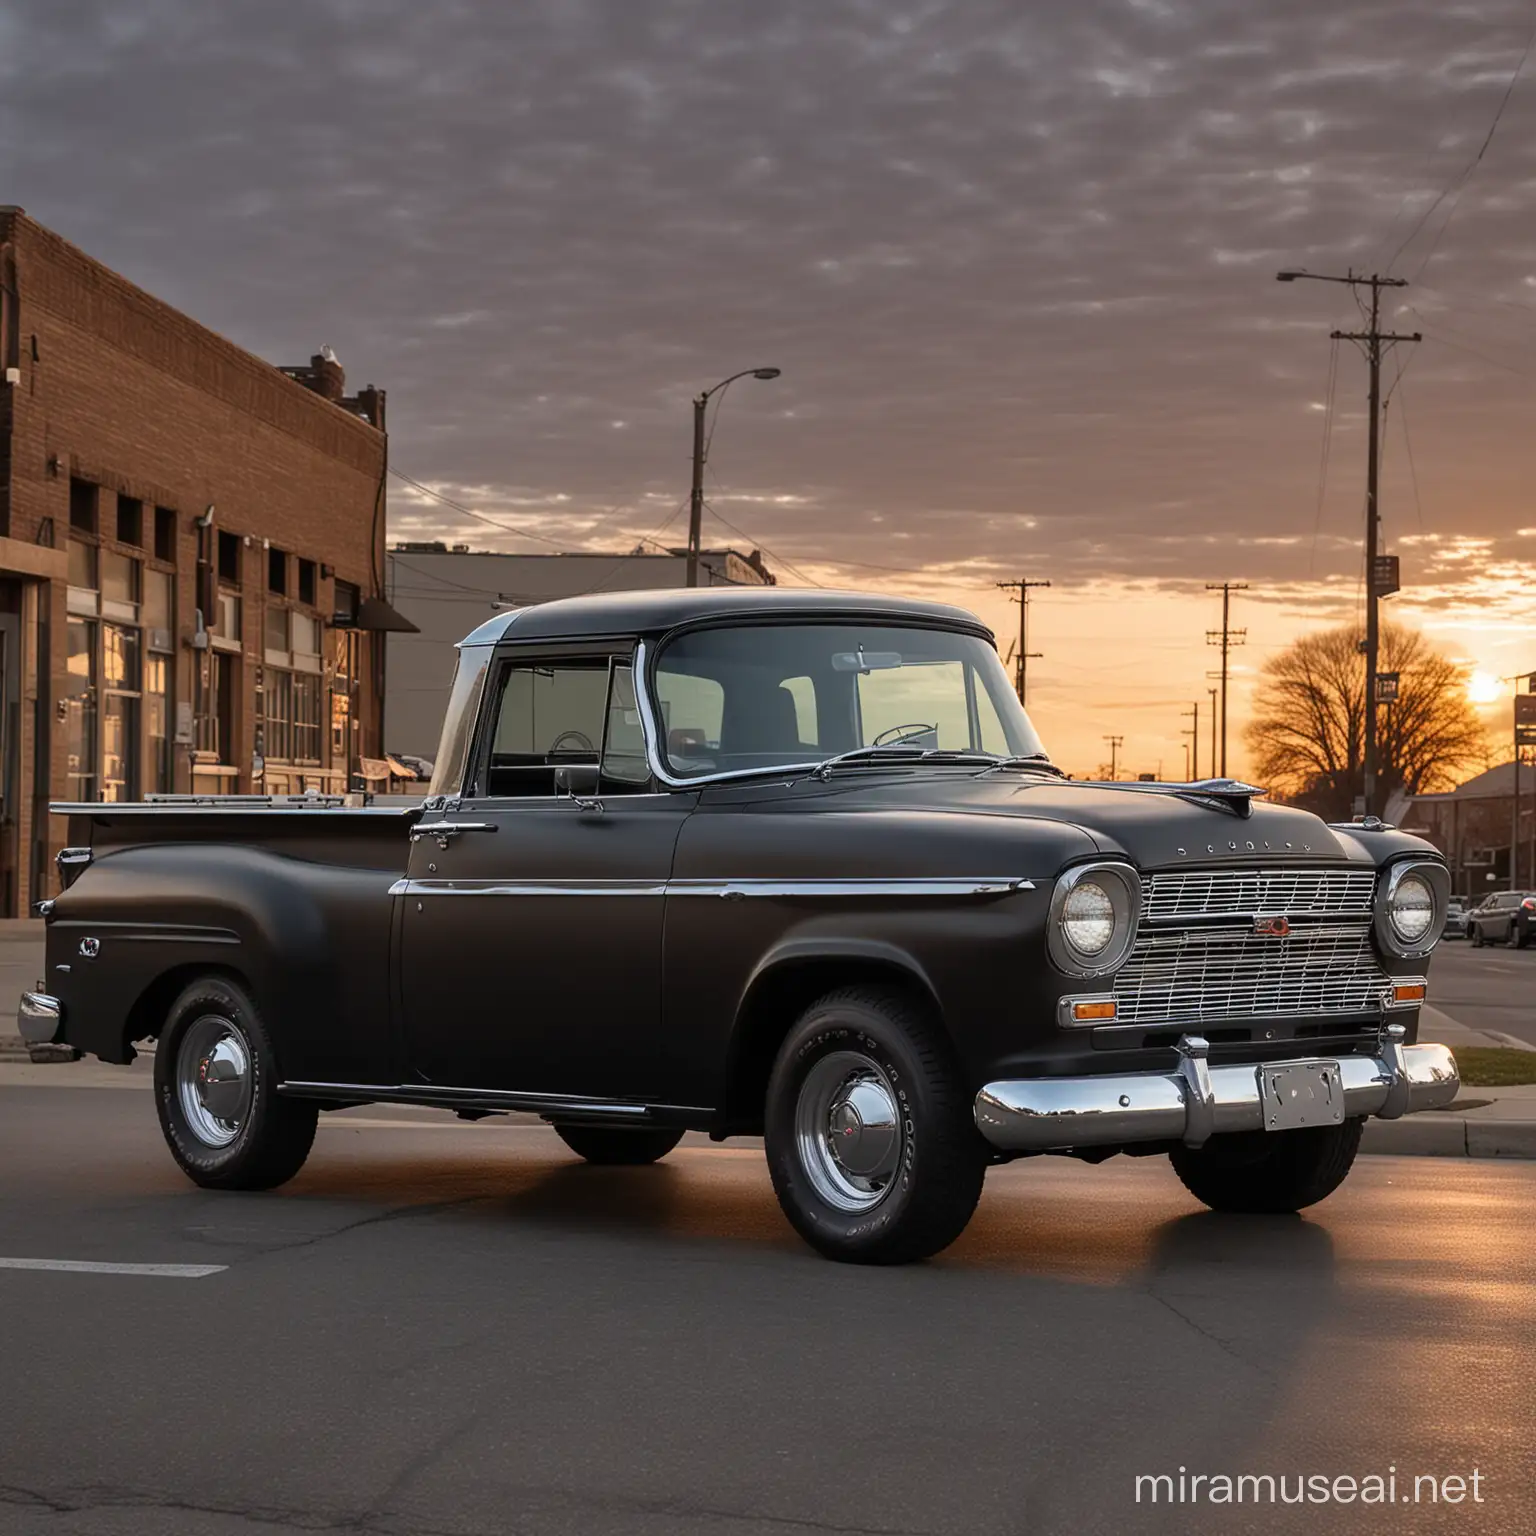 Camioneta Rambler Grand Sport 1959, Clásica, color negro mate, estacionada en una calle de Des Moines Iowa, a las 7 de la mañana, la escena fotografica tiene una atmosfera de luz que cubre la carroceria de efectos de luz que la hacen ver muy hermosa.